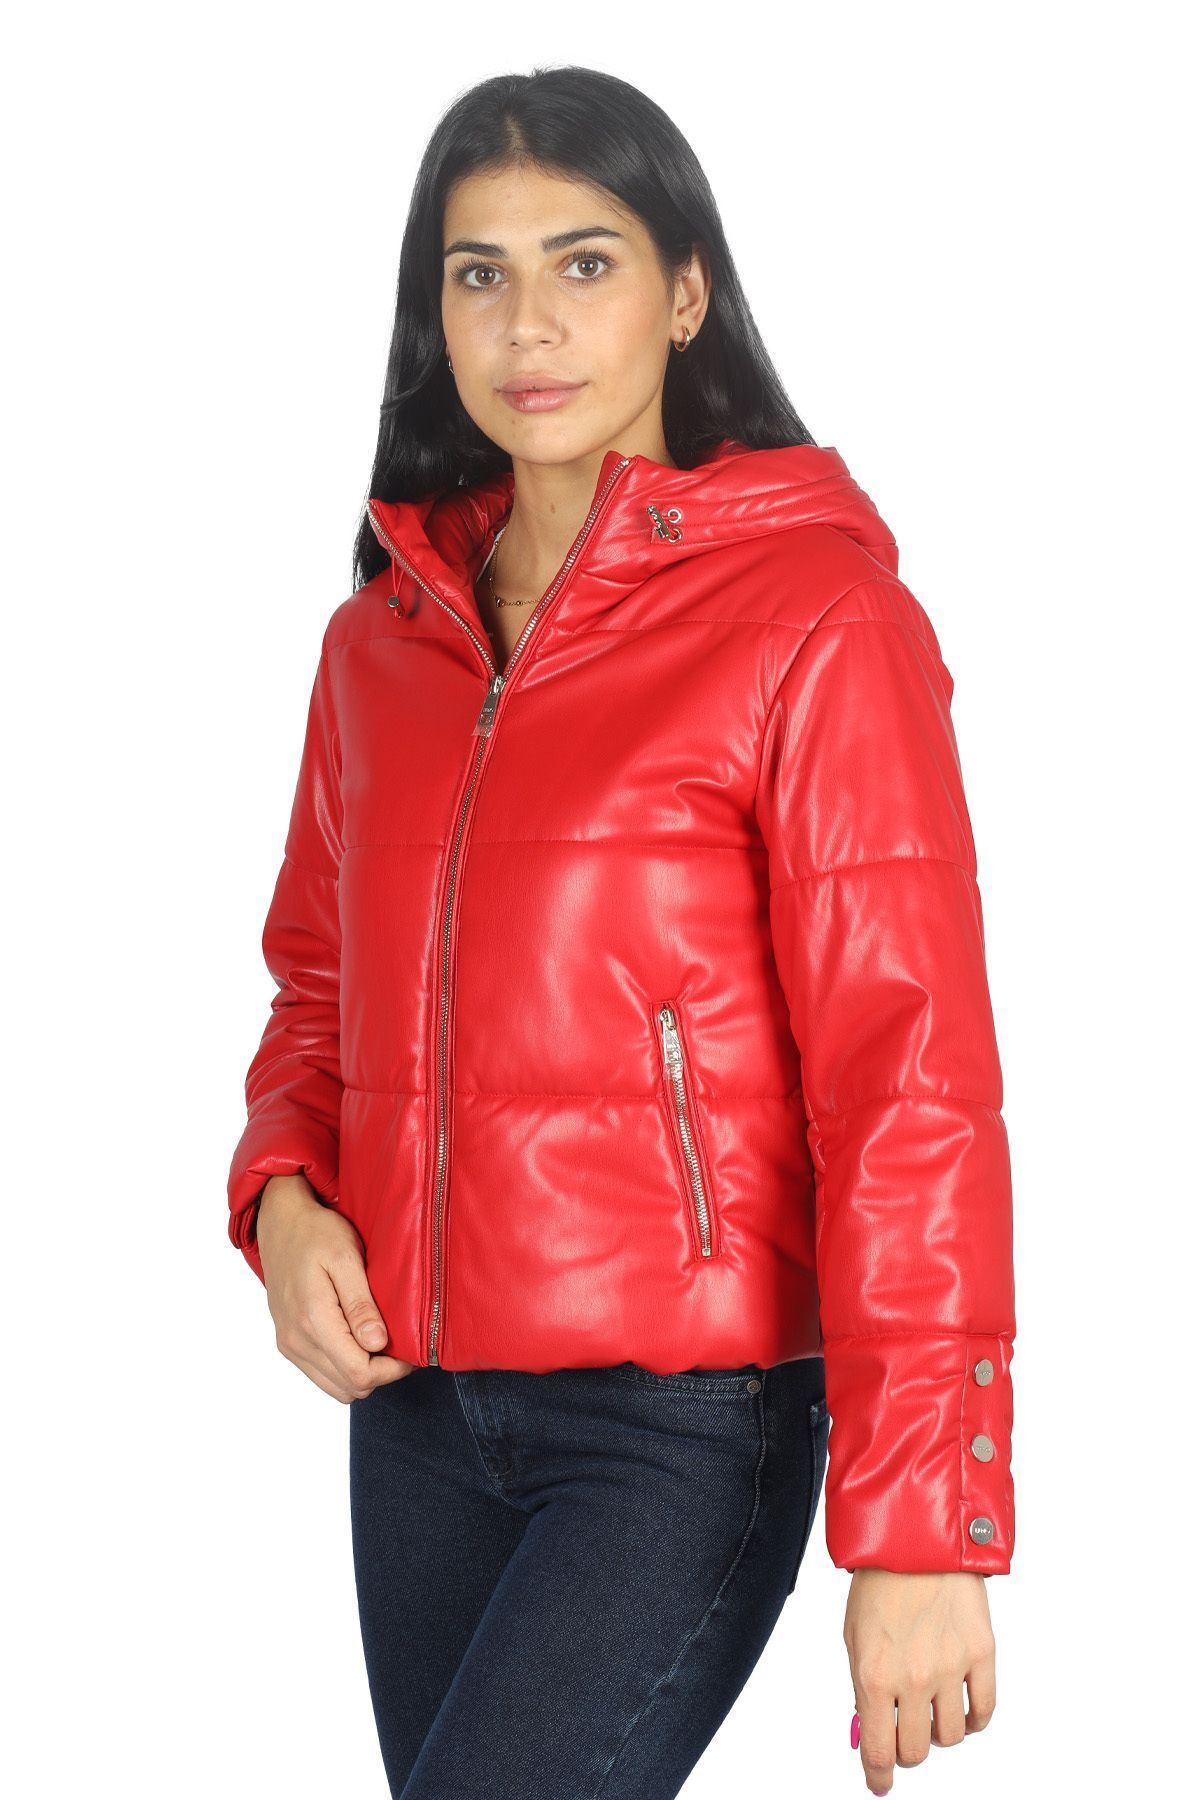 Liu Jo Kadın Kapşonlu Yaka Marka Detaylı Fermuarlı Şişme Kırmızı Ceket MF3068E0392-91757